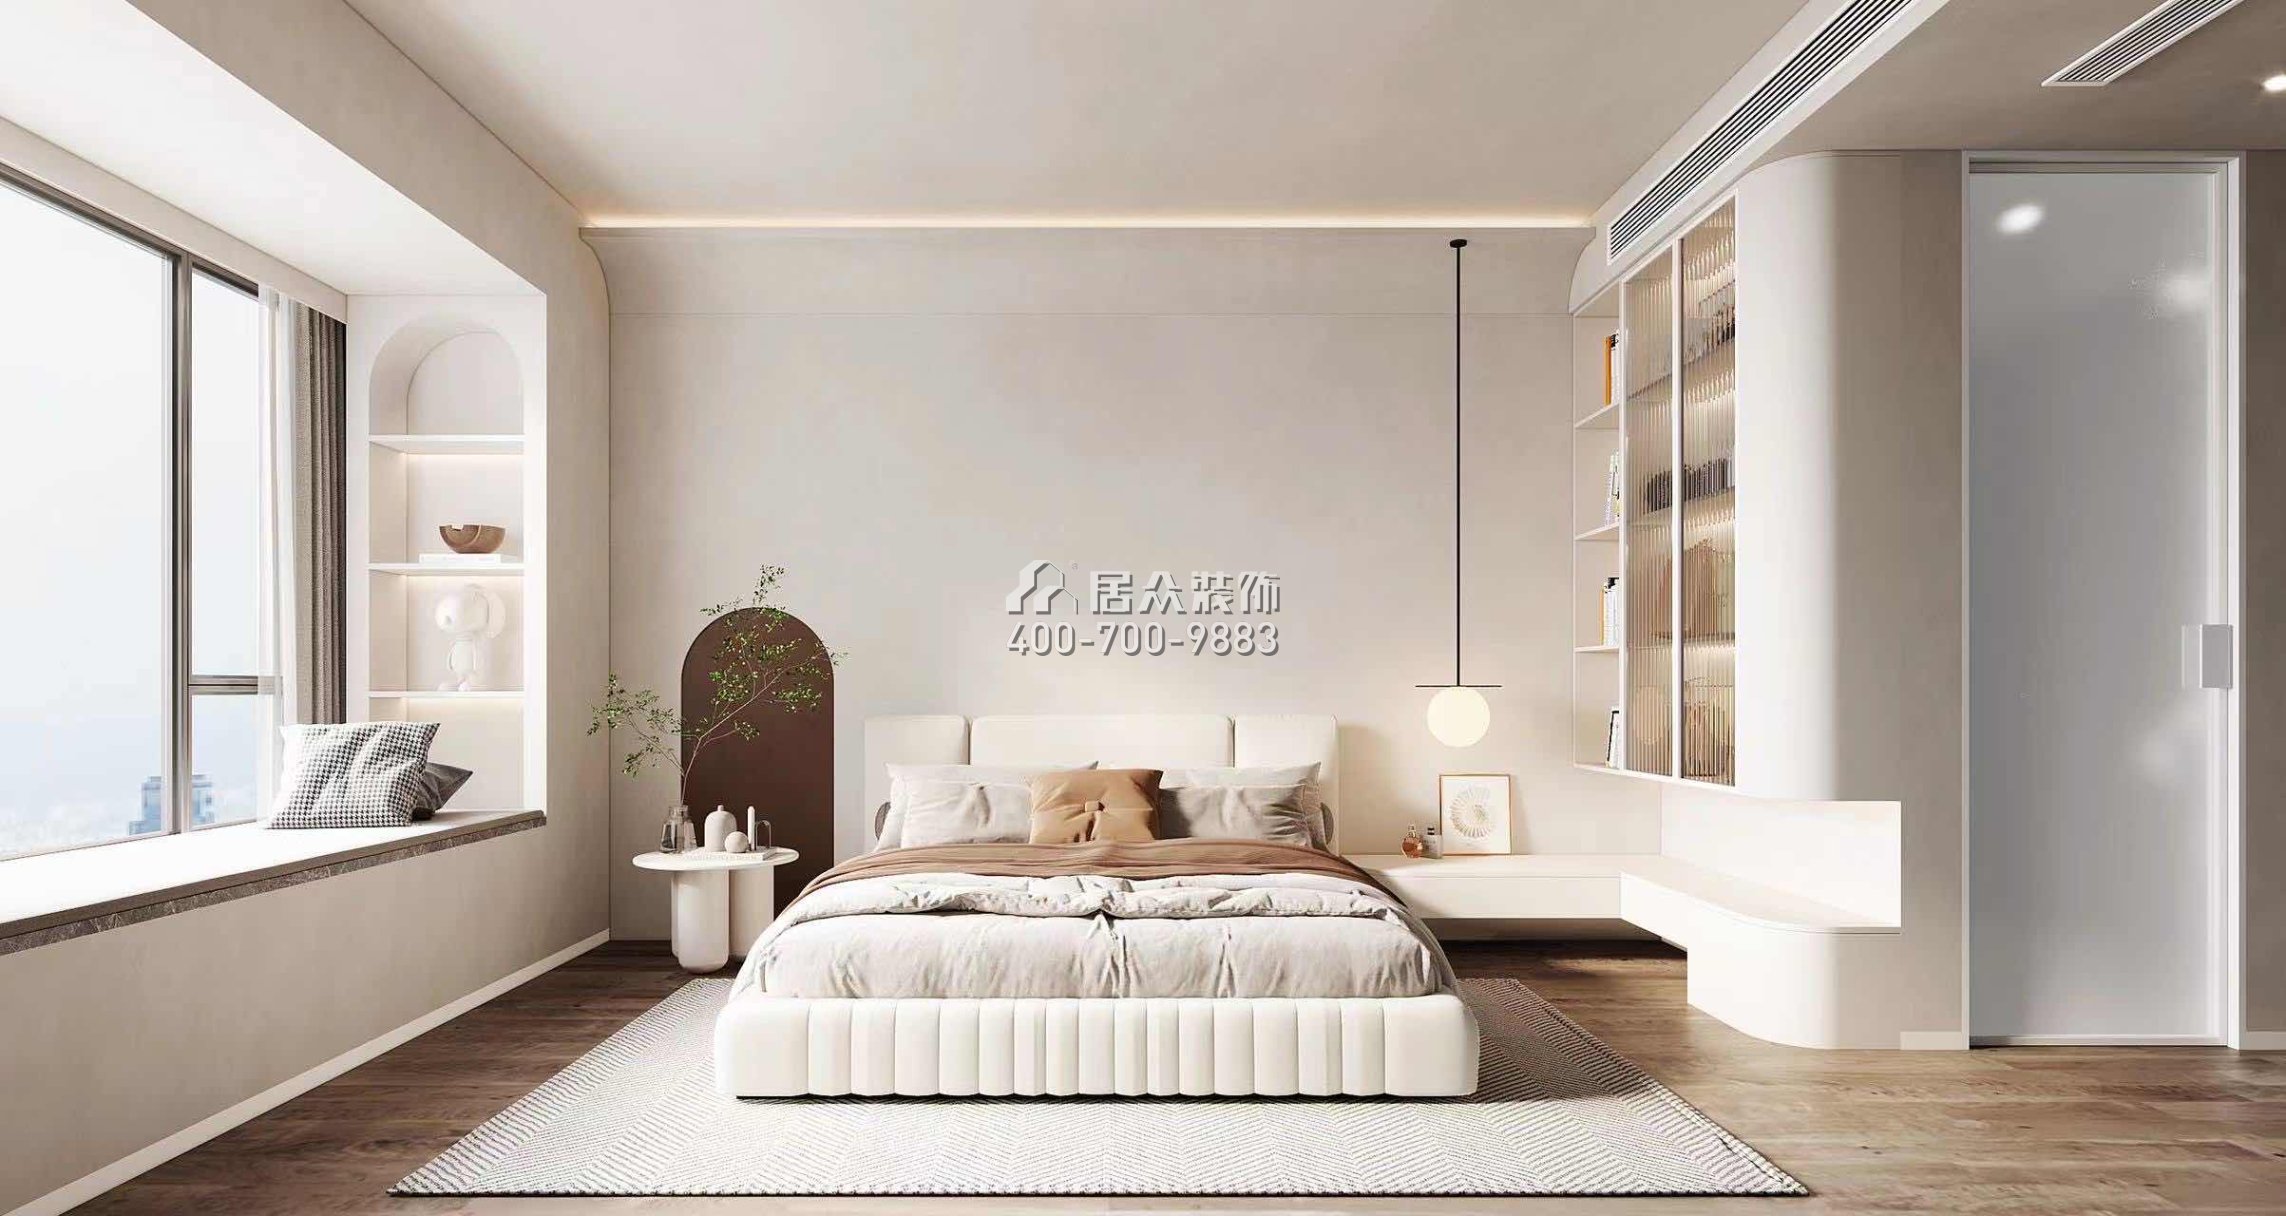 中洲滨海华府一期166平方米现代简约风格平层户型卧室装修效果图